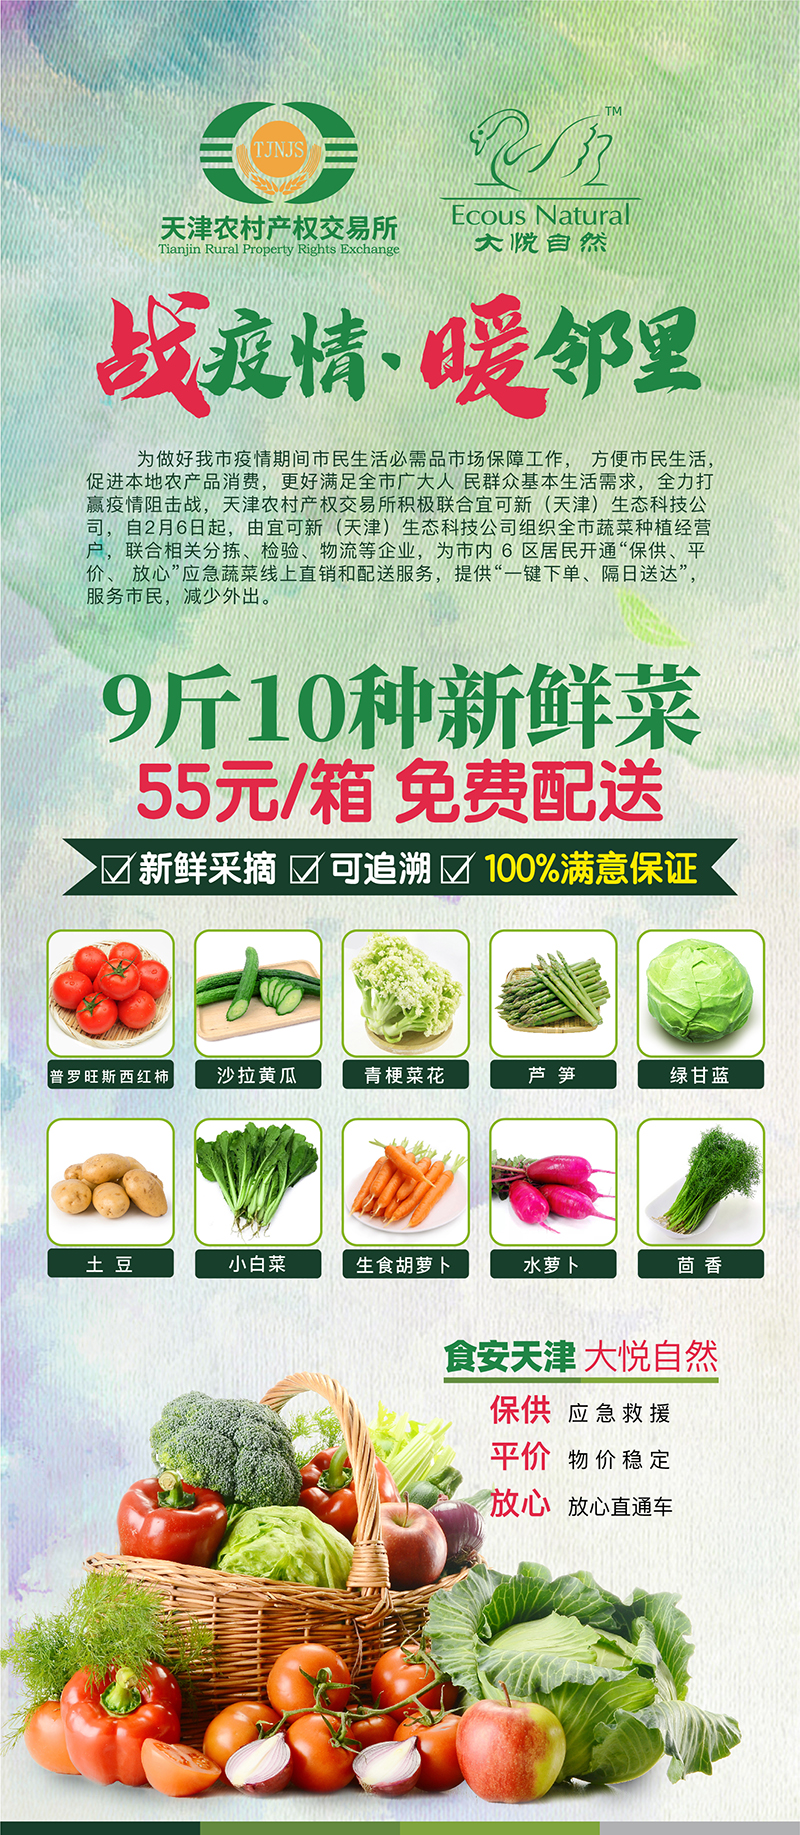 【天津包邮 隔日达】平价放心新鲜蔬菜箱（9斤10种蔬菜）第十期菜单已更新